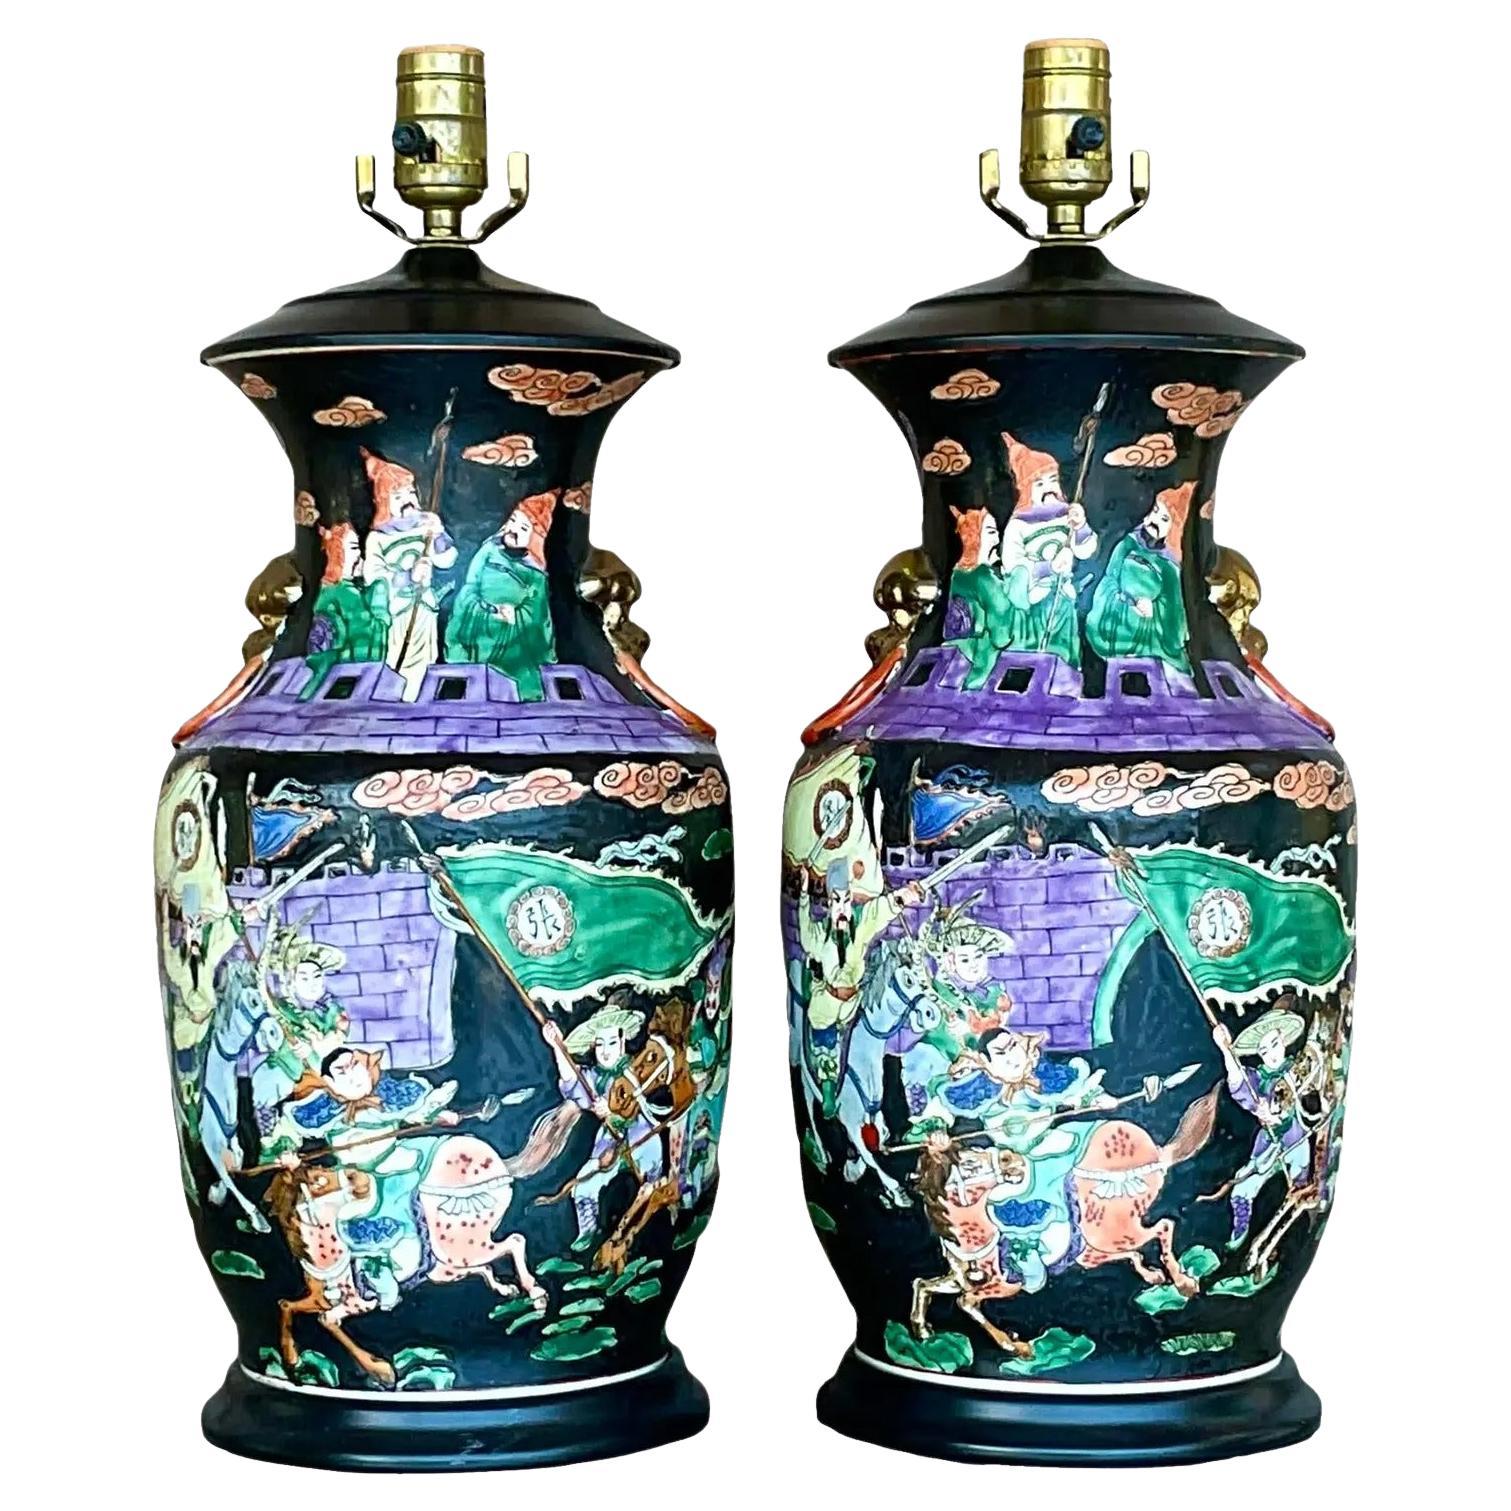 Asiatische, juwelenfarbene Chinoiserie-Keramiklampen im Vintage-Stil - ein Paar